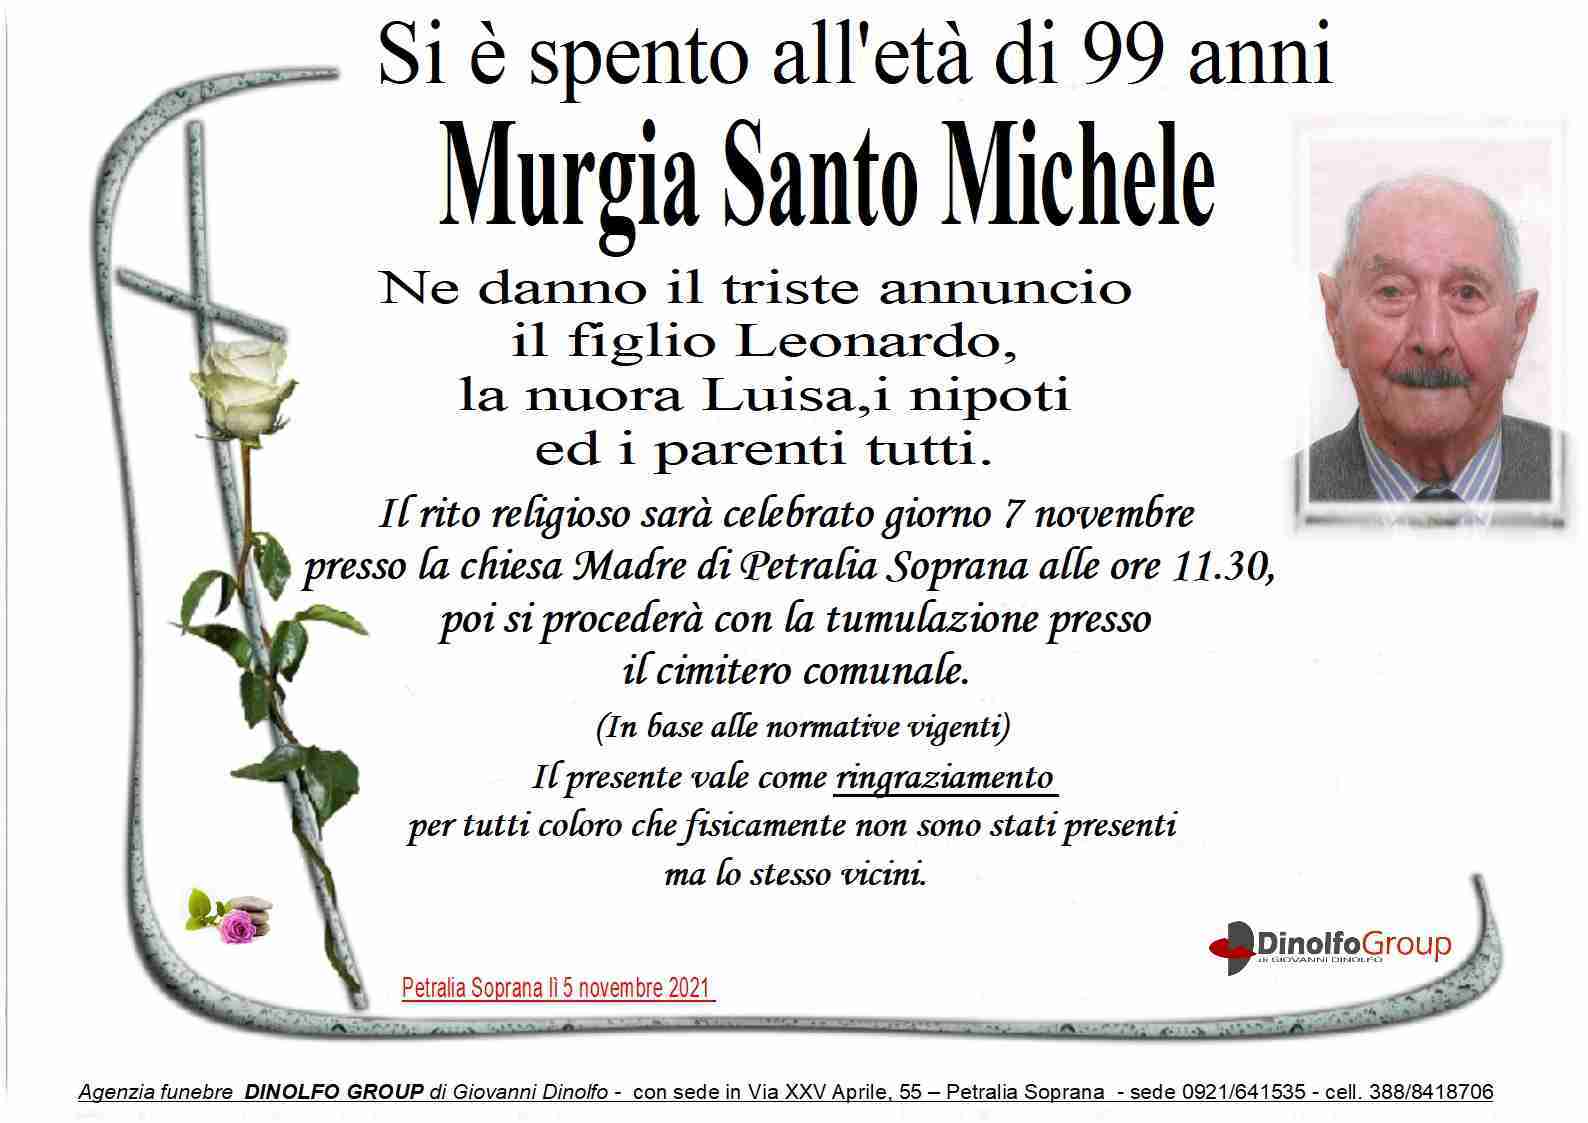 Santo Michele Murgia